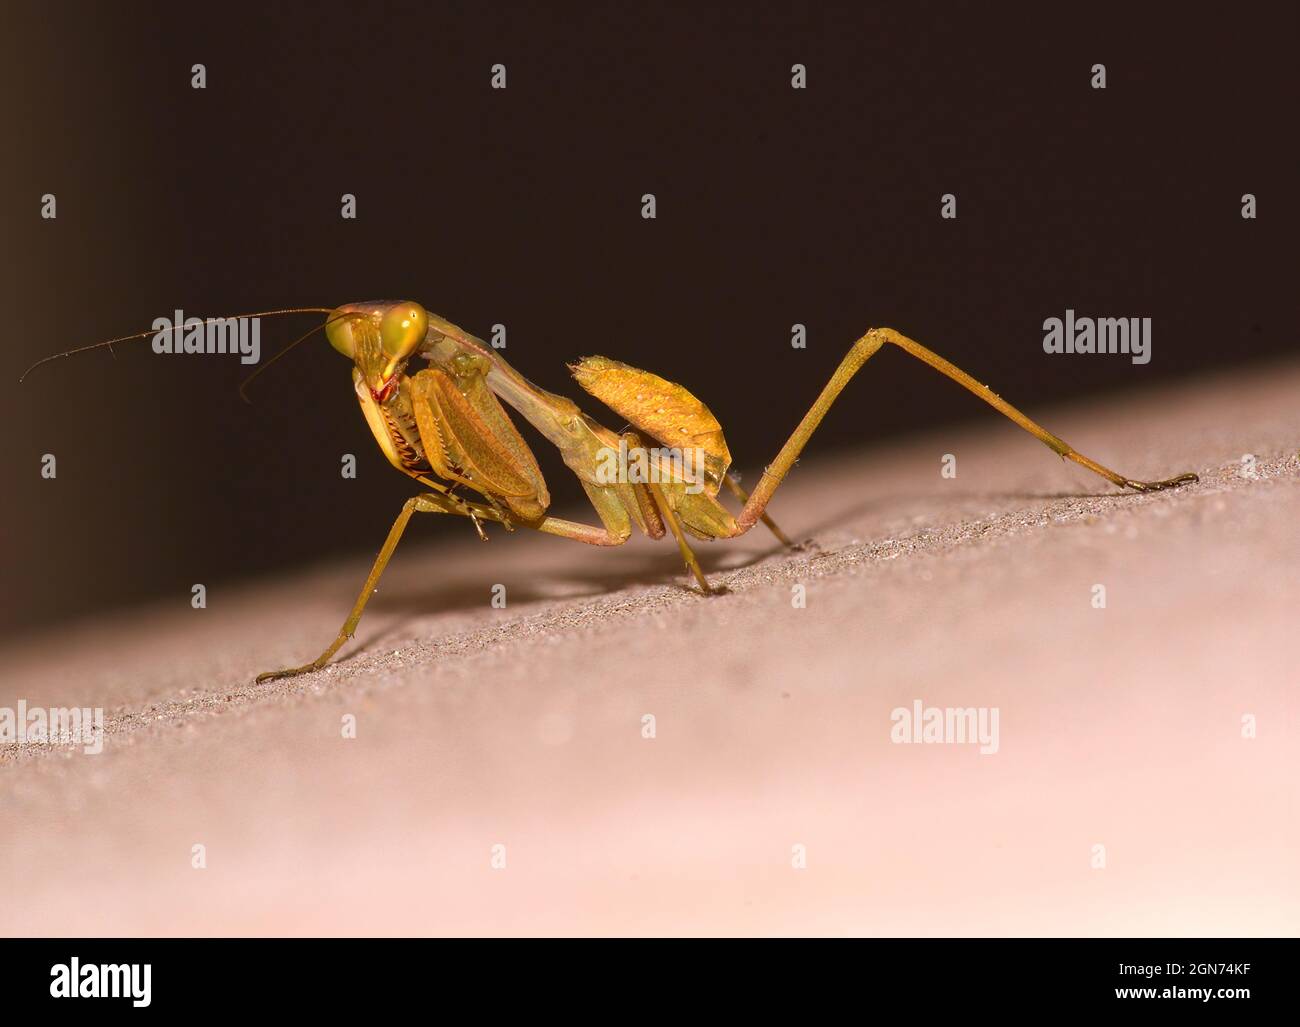 Dancing praying mantis Stock Photo